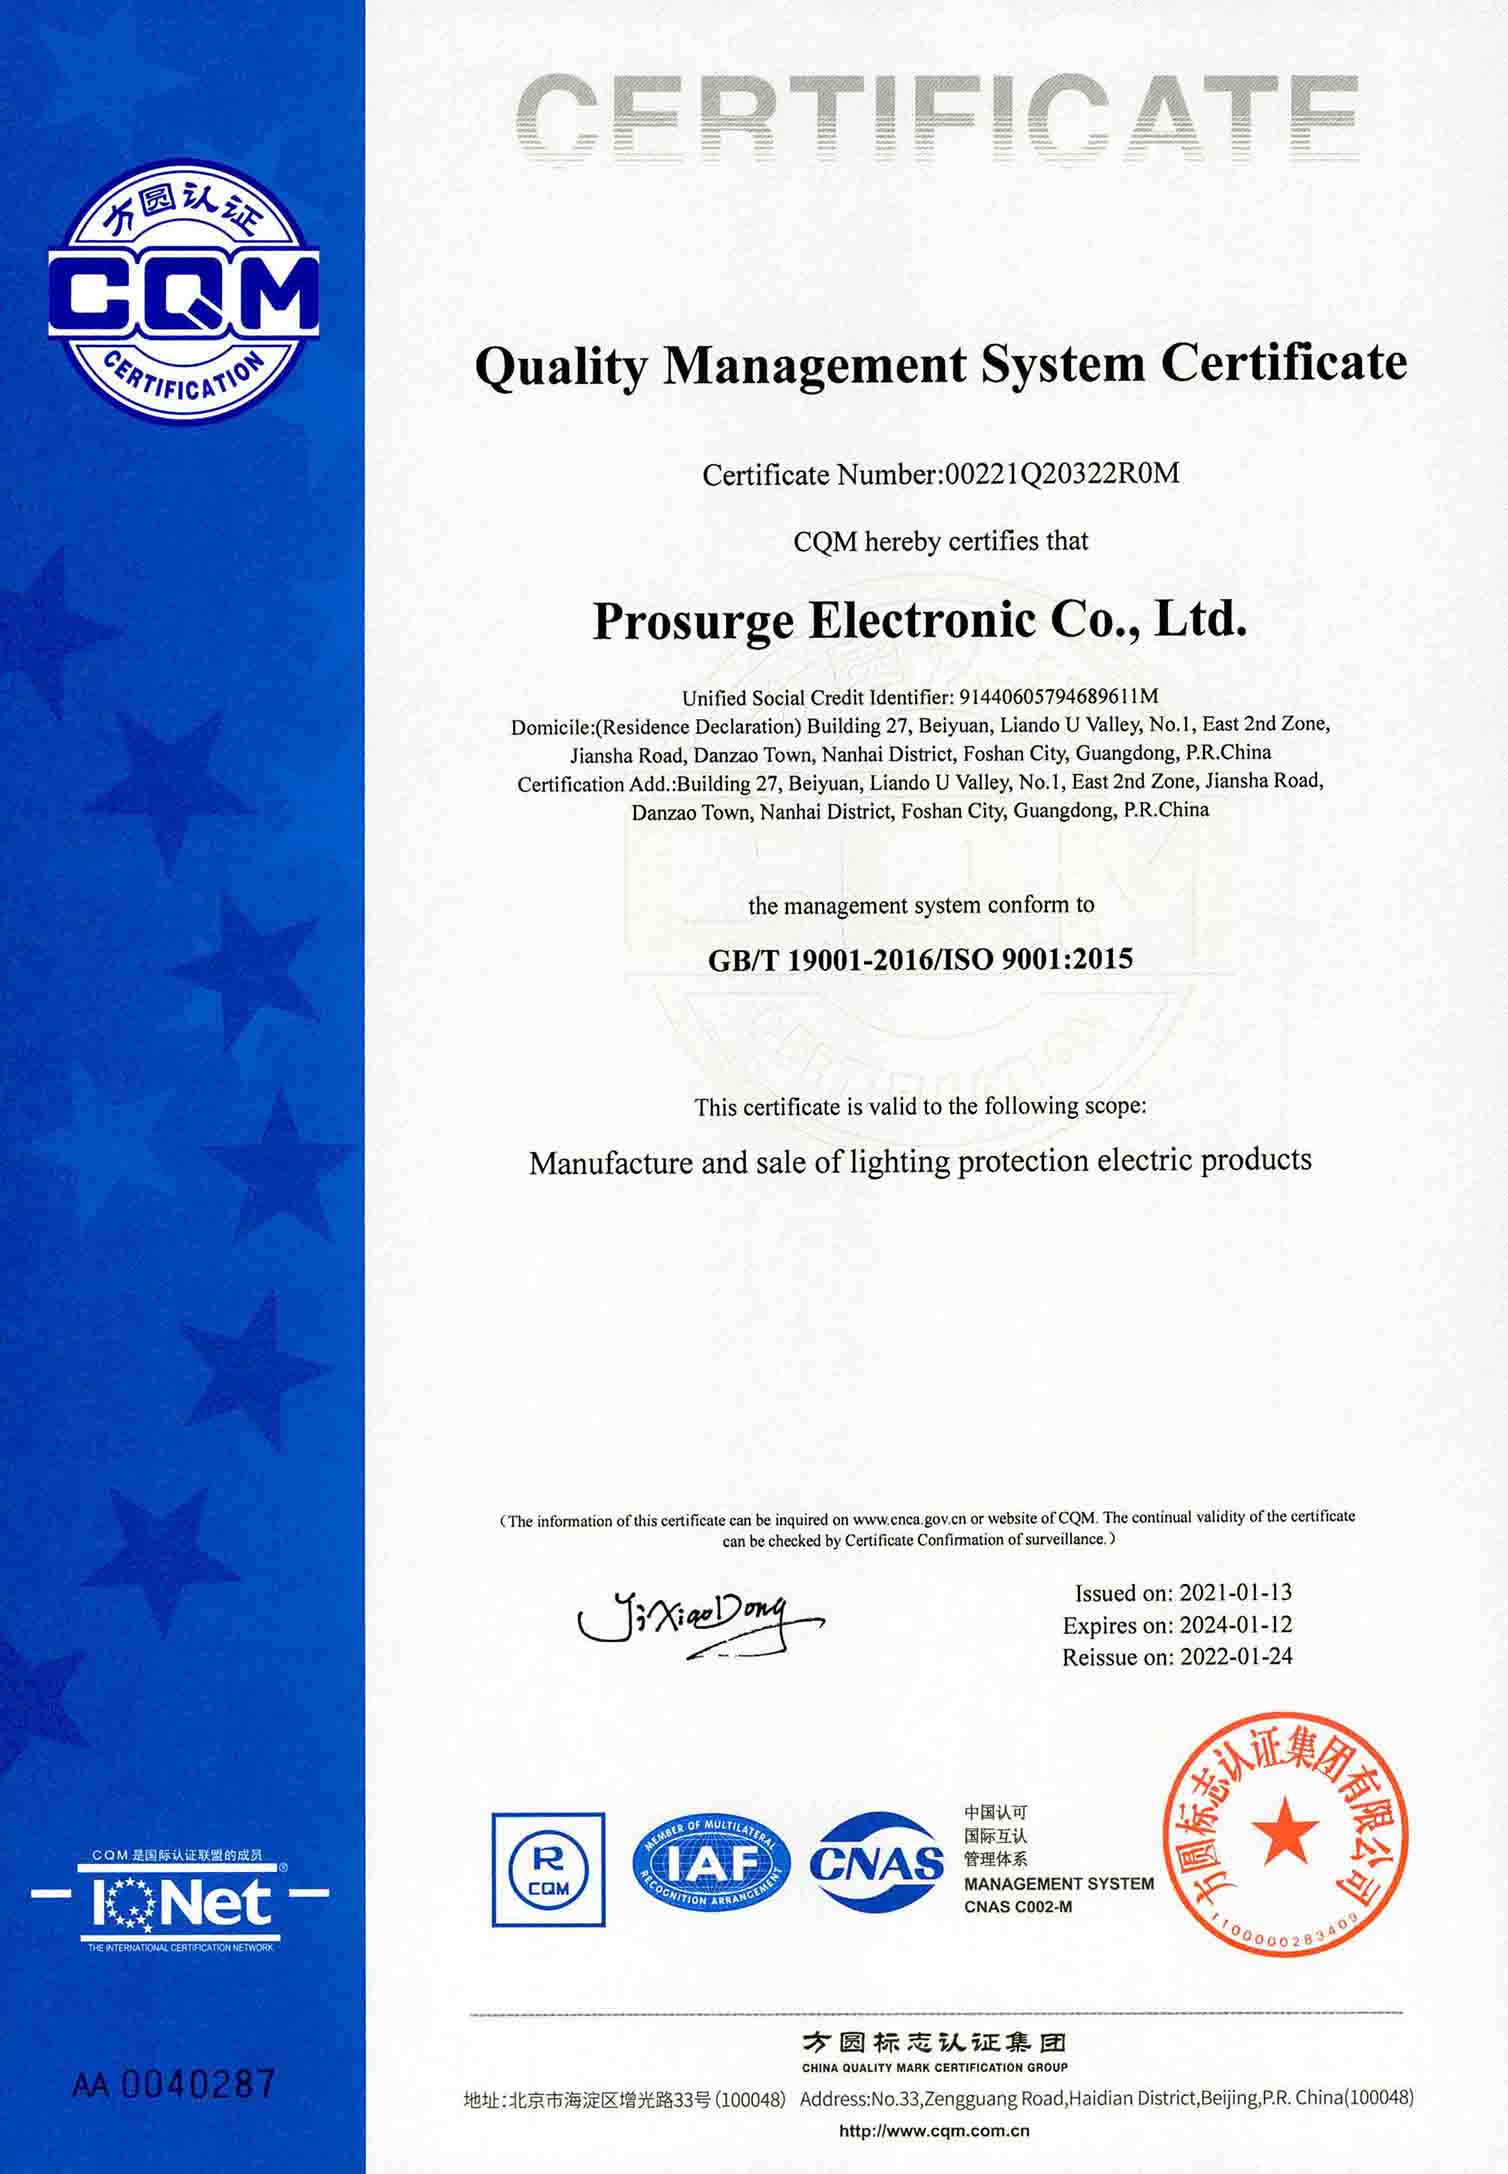 Ang Prosurge ay ISO9001 na sertipikadong kumpanya